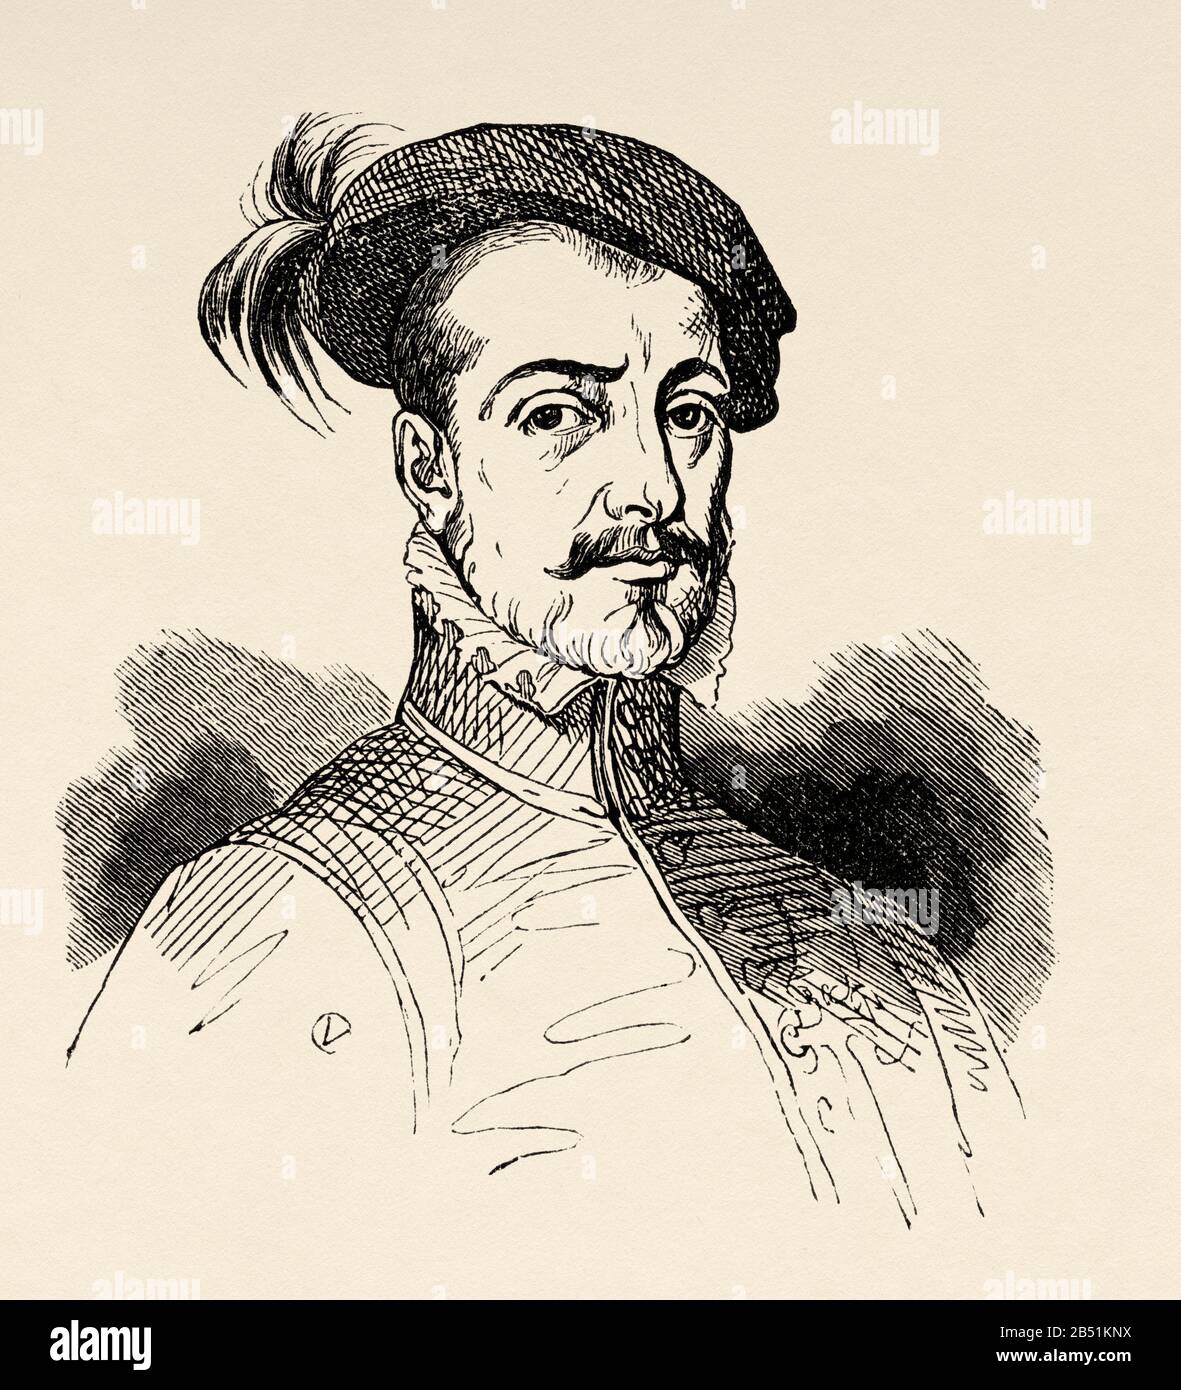 Retrato de Hernán Cortés de Monroy y Pizarro Altamirano, I Marqués del Valle de Oaxaca (Medellín 1485 - Castilleja de la cuesta 1547). Español Foto de stock